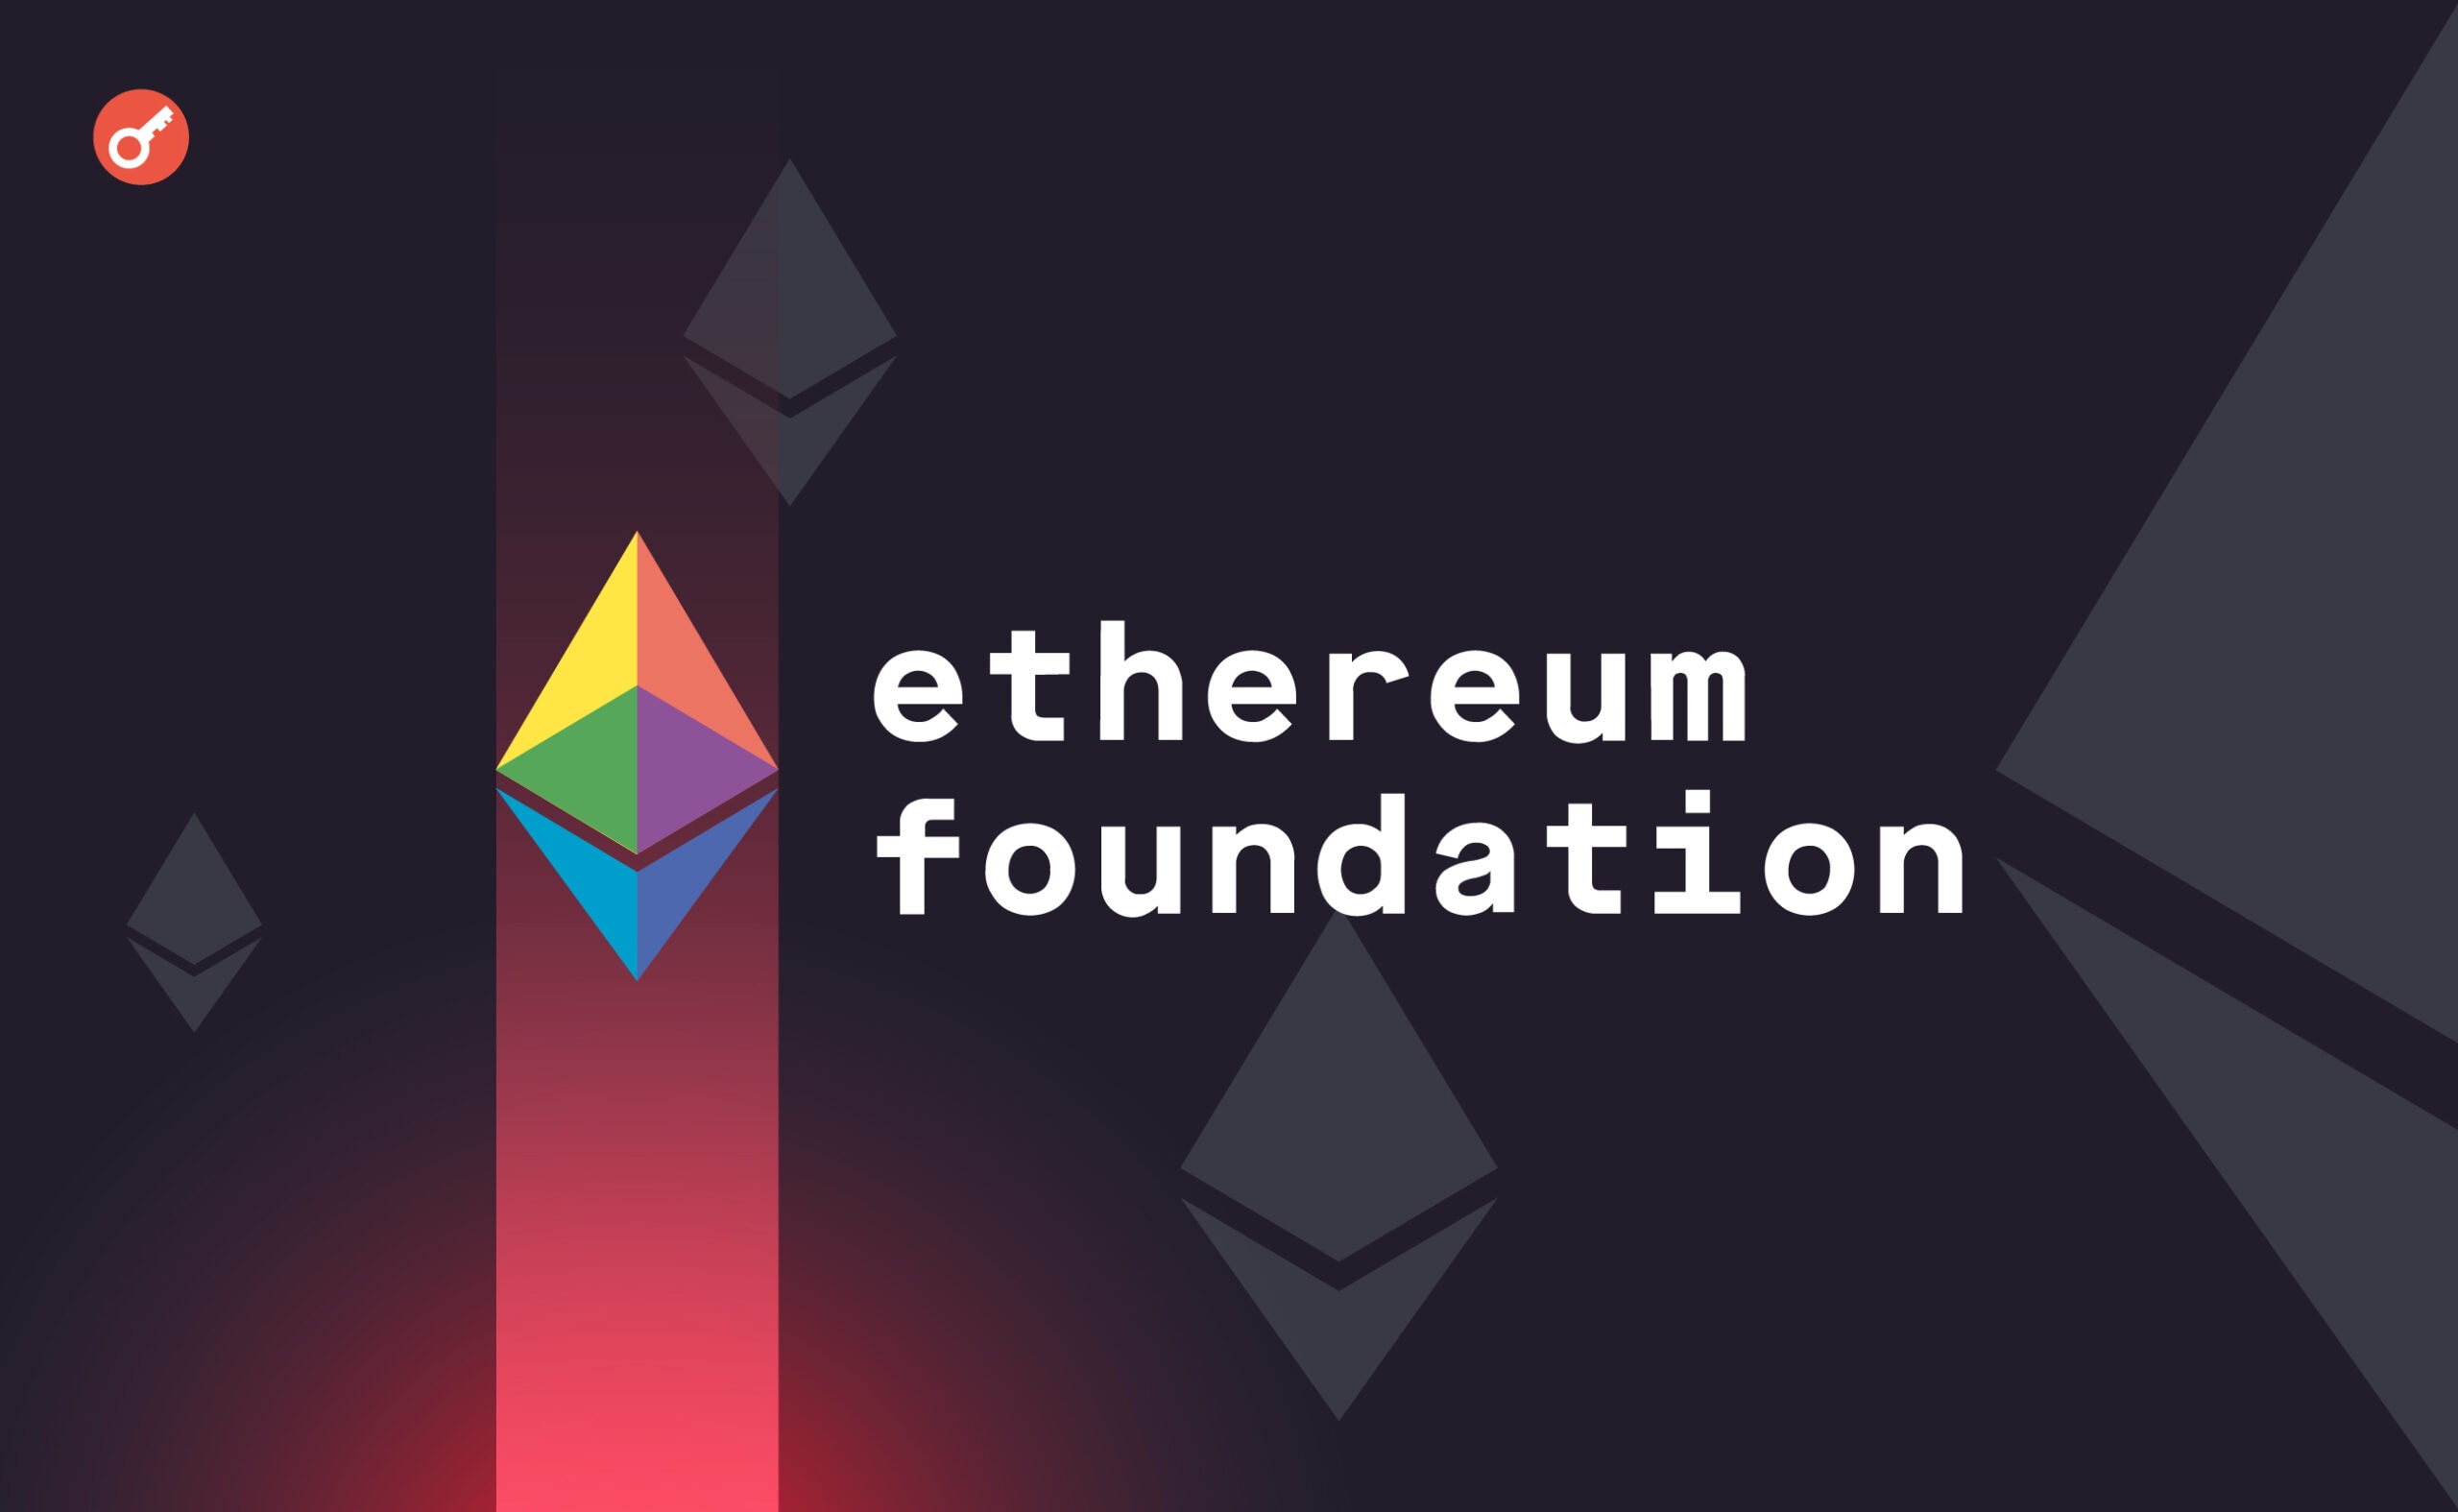 У Ethereum Foundation оголосили про відкриття раунду грантів. Головний колаж новини.